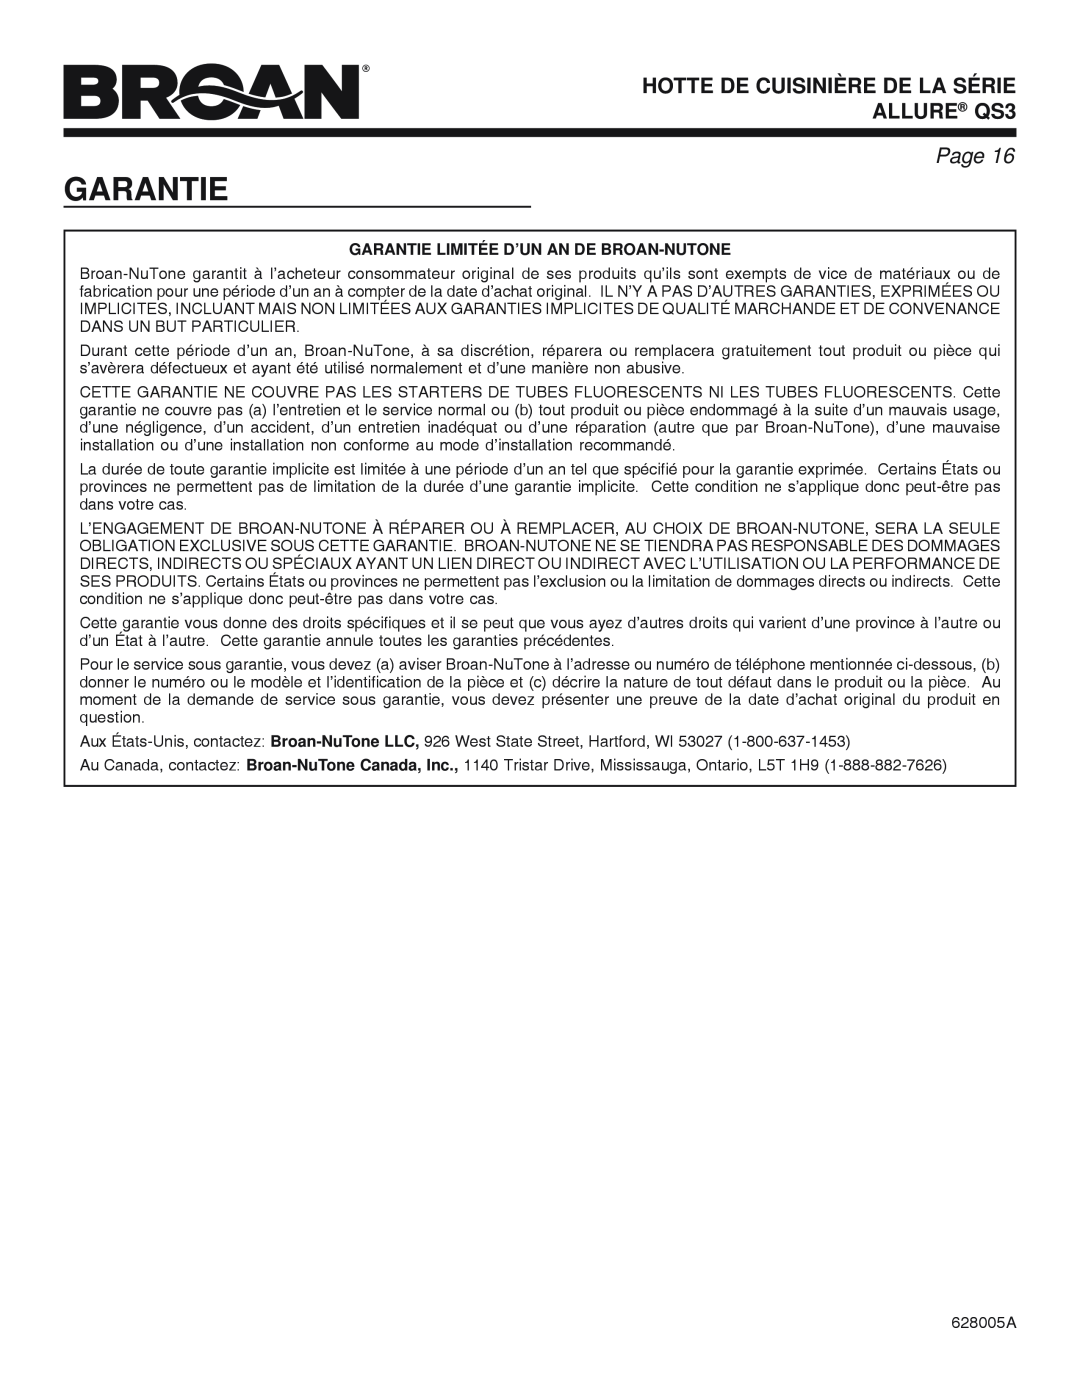 Broan QS3 SERIES manual HOTTE DE CUISINIÈRE DE LA SÉRIE ALLURE QS3, Page, Garantie Limitée D’Un An De Broan-Nutone 